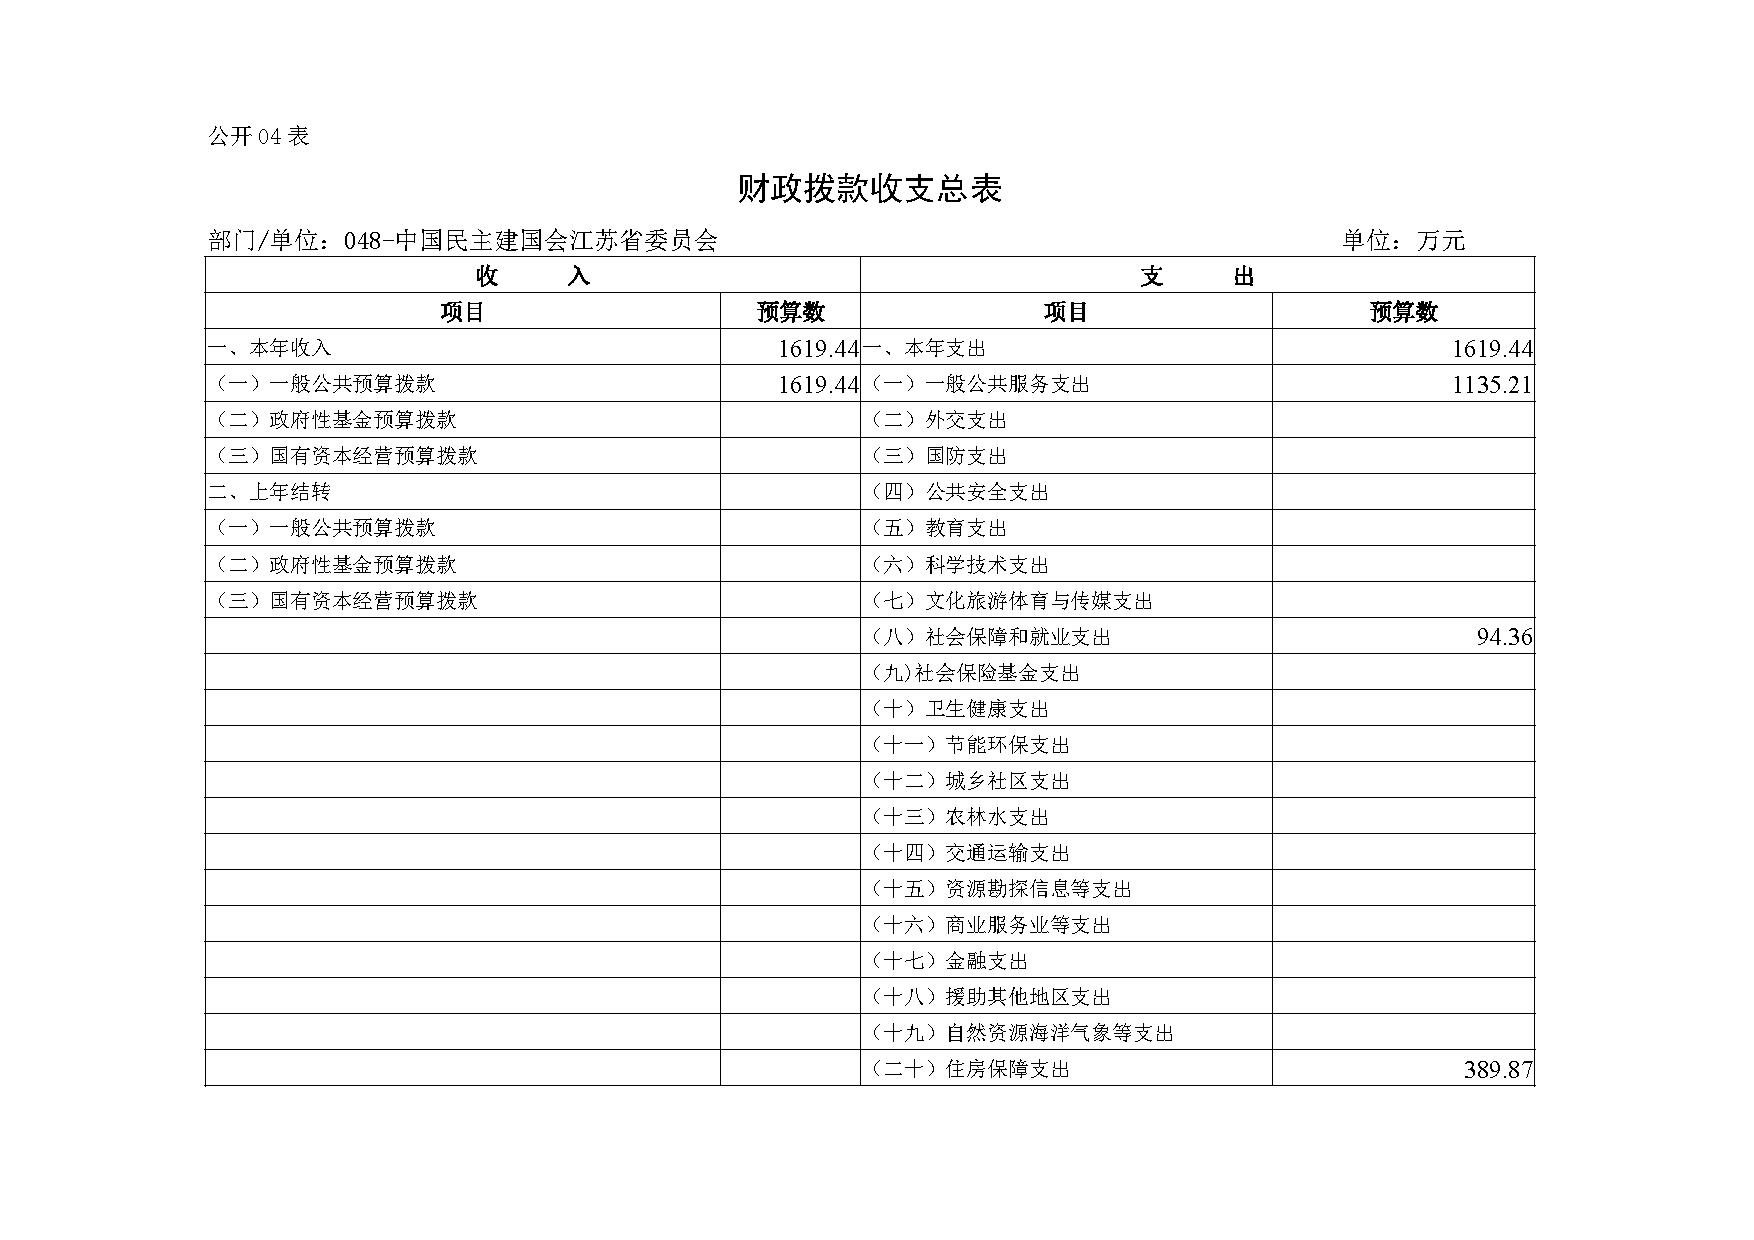 2021年度中国民主建国会江苏省委员会部门预算公开-10.jpg